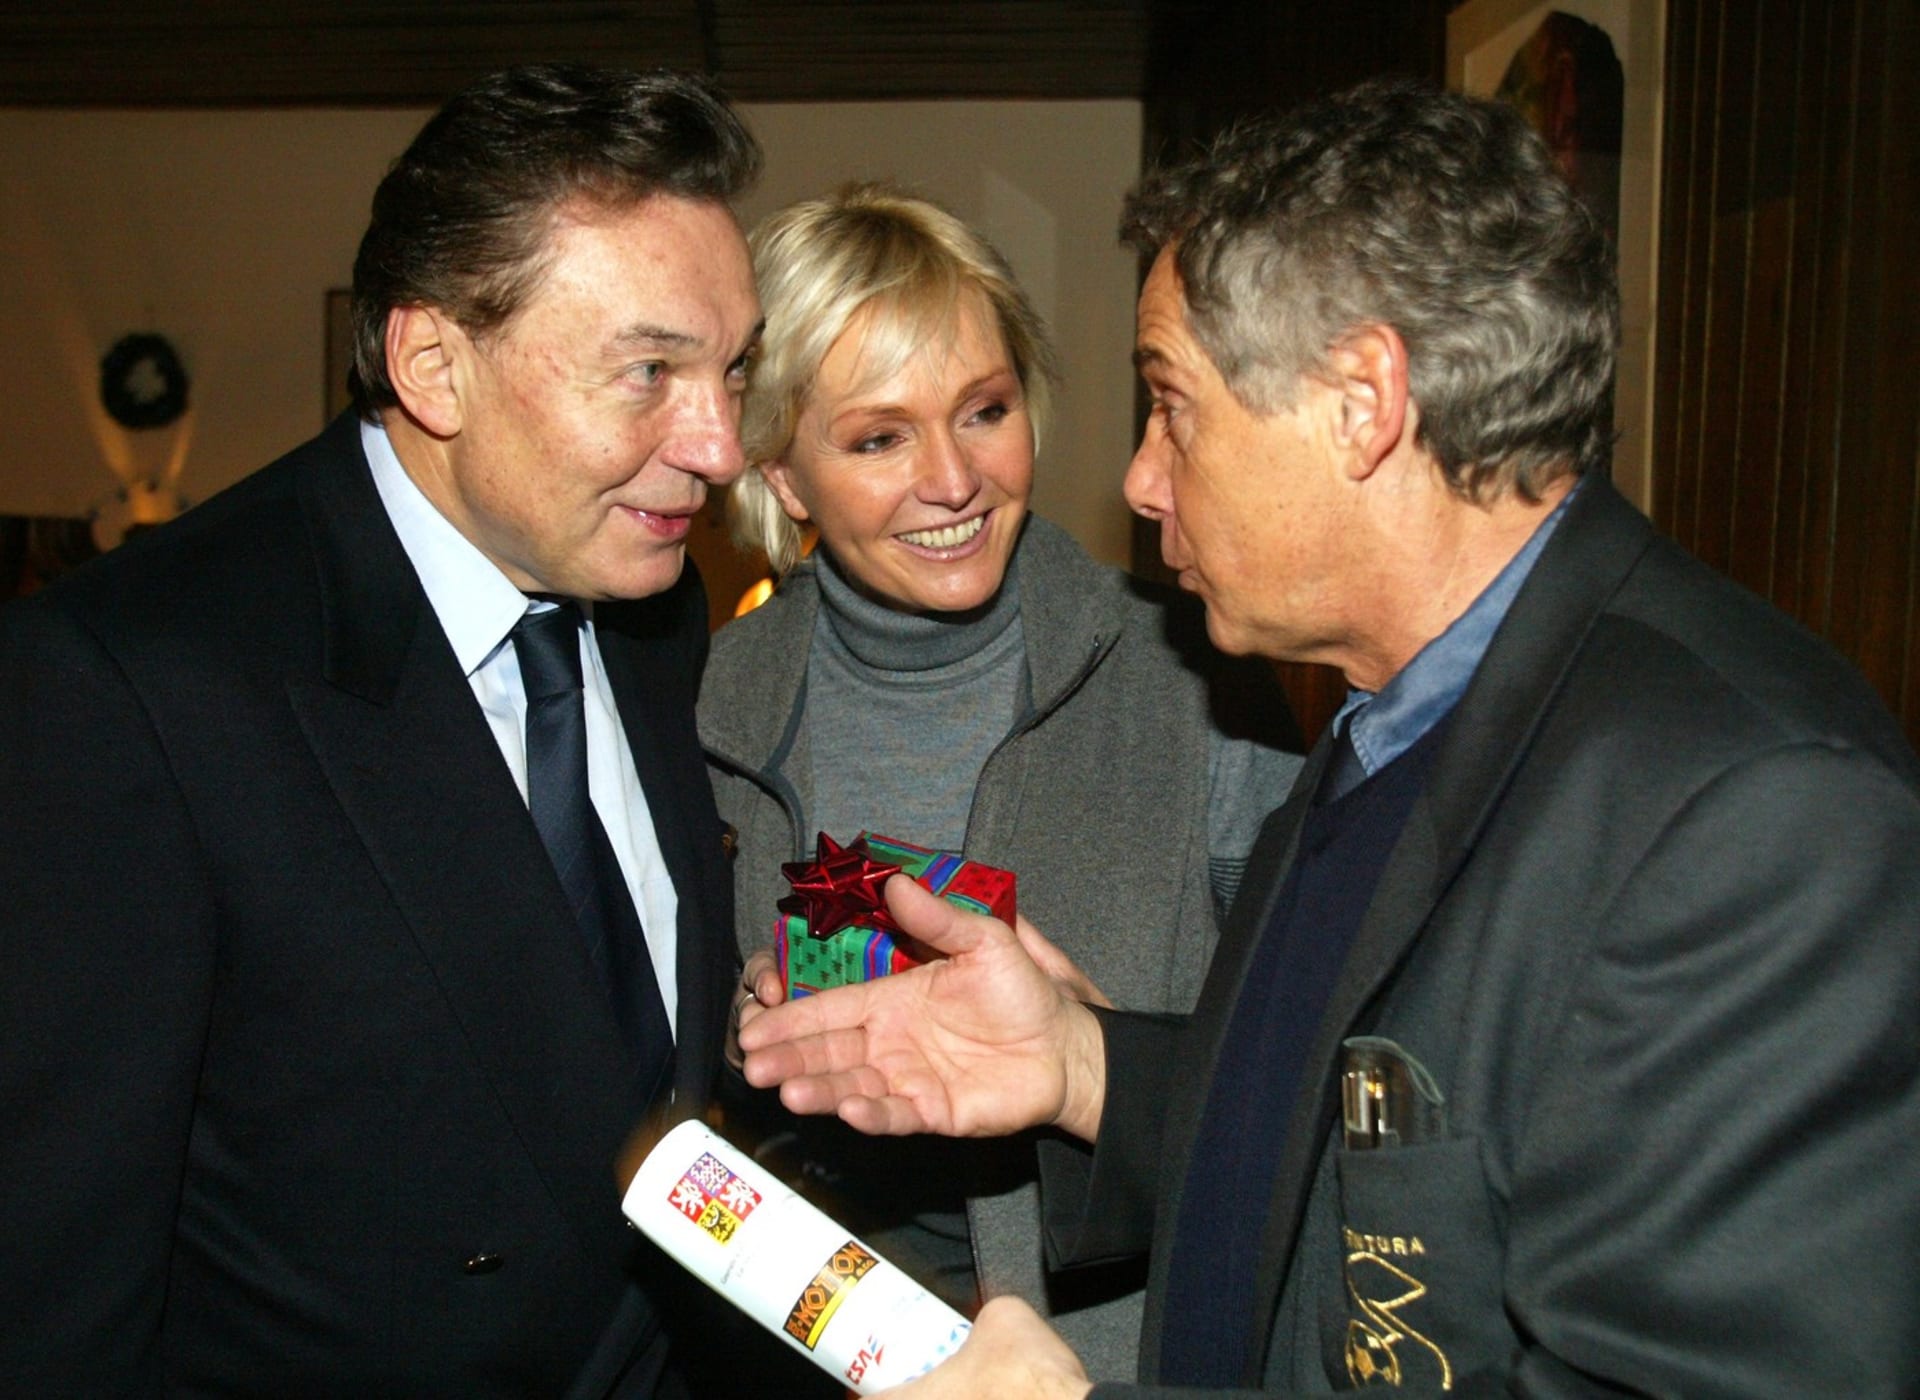 Josef Laufer na snímku s Karlem Gottem a Helenou Vondráčkovou.